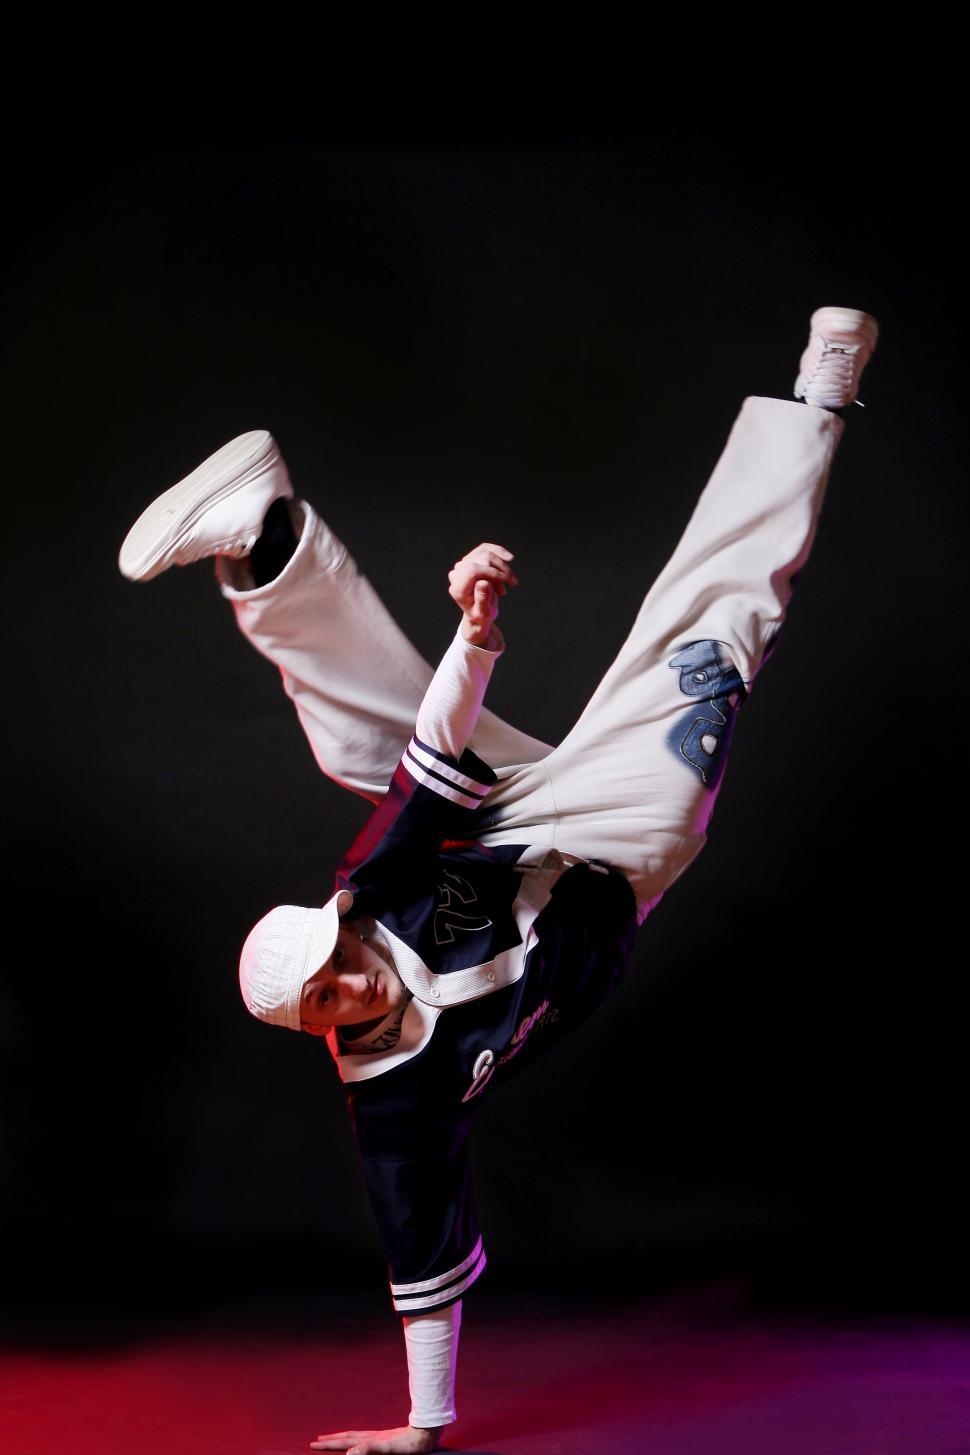 Free Image of hip hop dancer in motion 